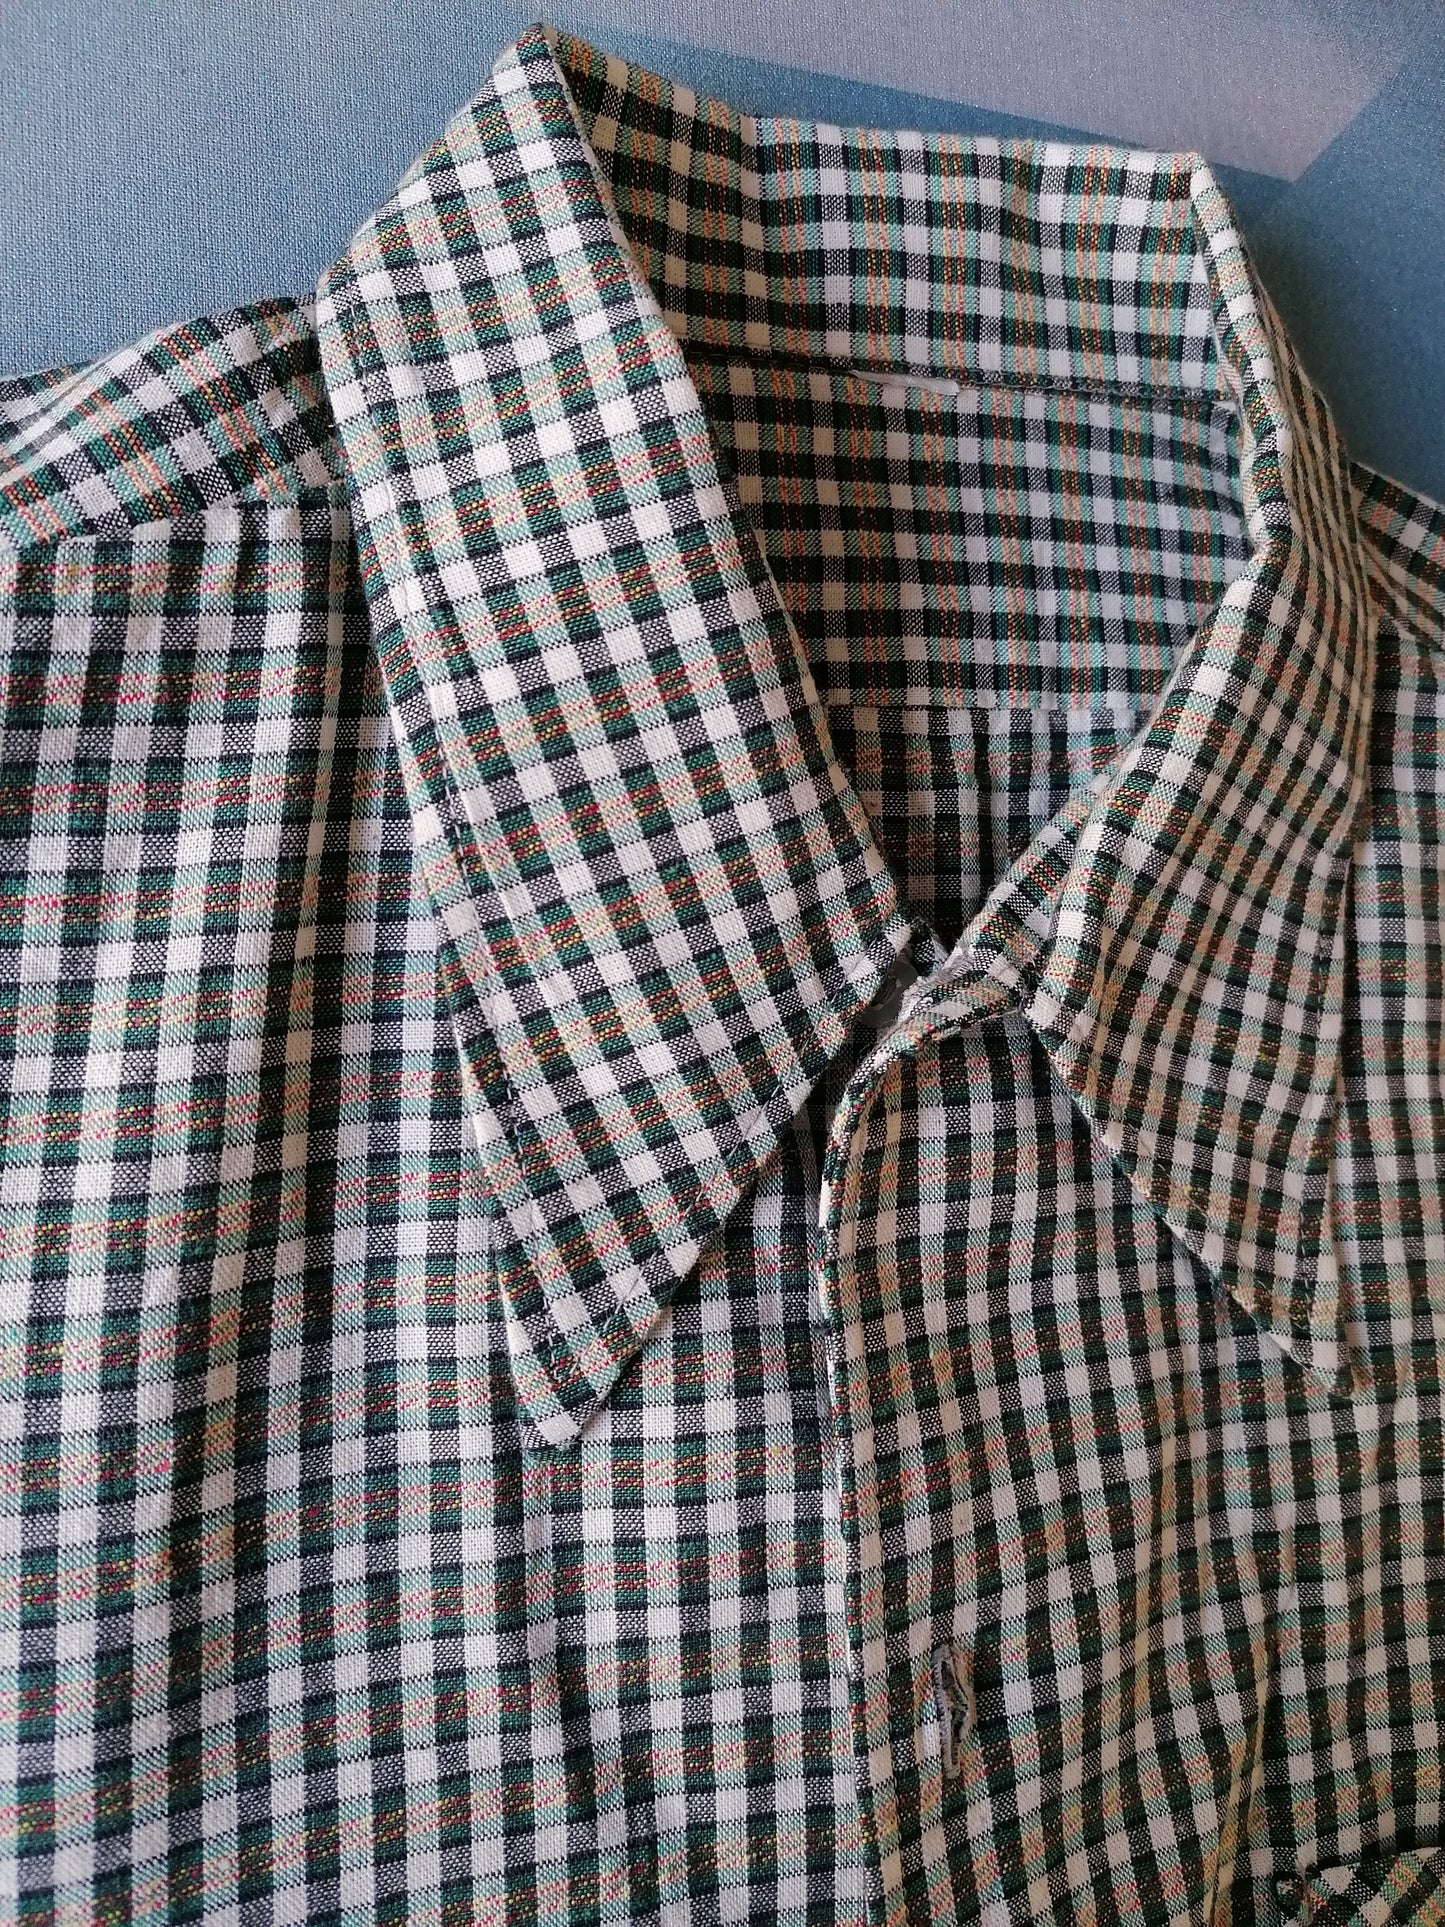 Vintage 70's overhemd korte mouw met puntkraag. Maat XL.